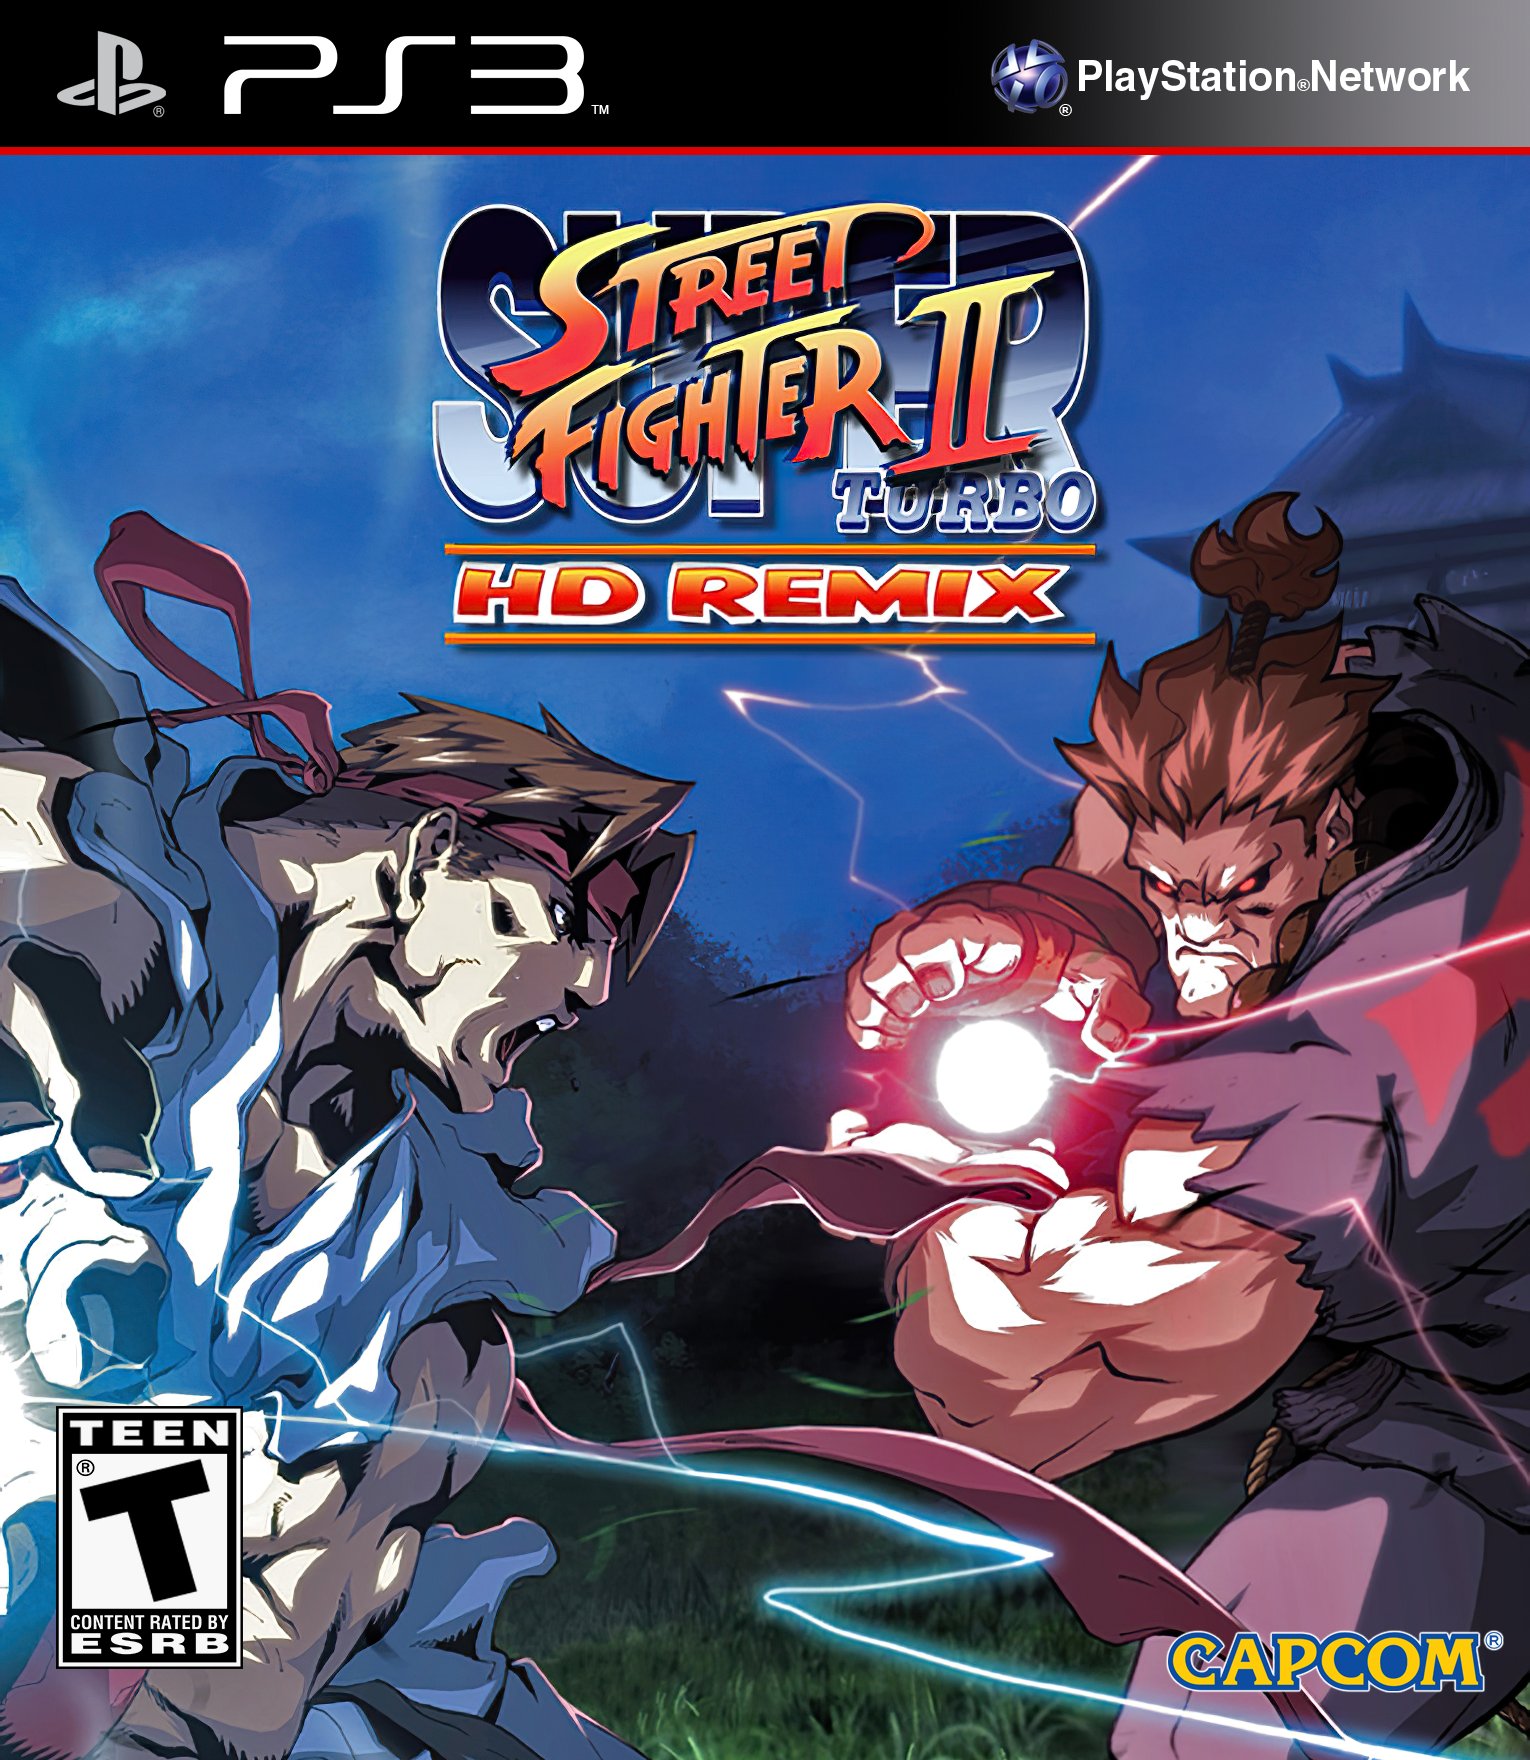 Super Street Fighter II Turbo: HD Remix